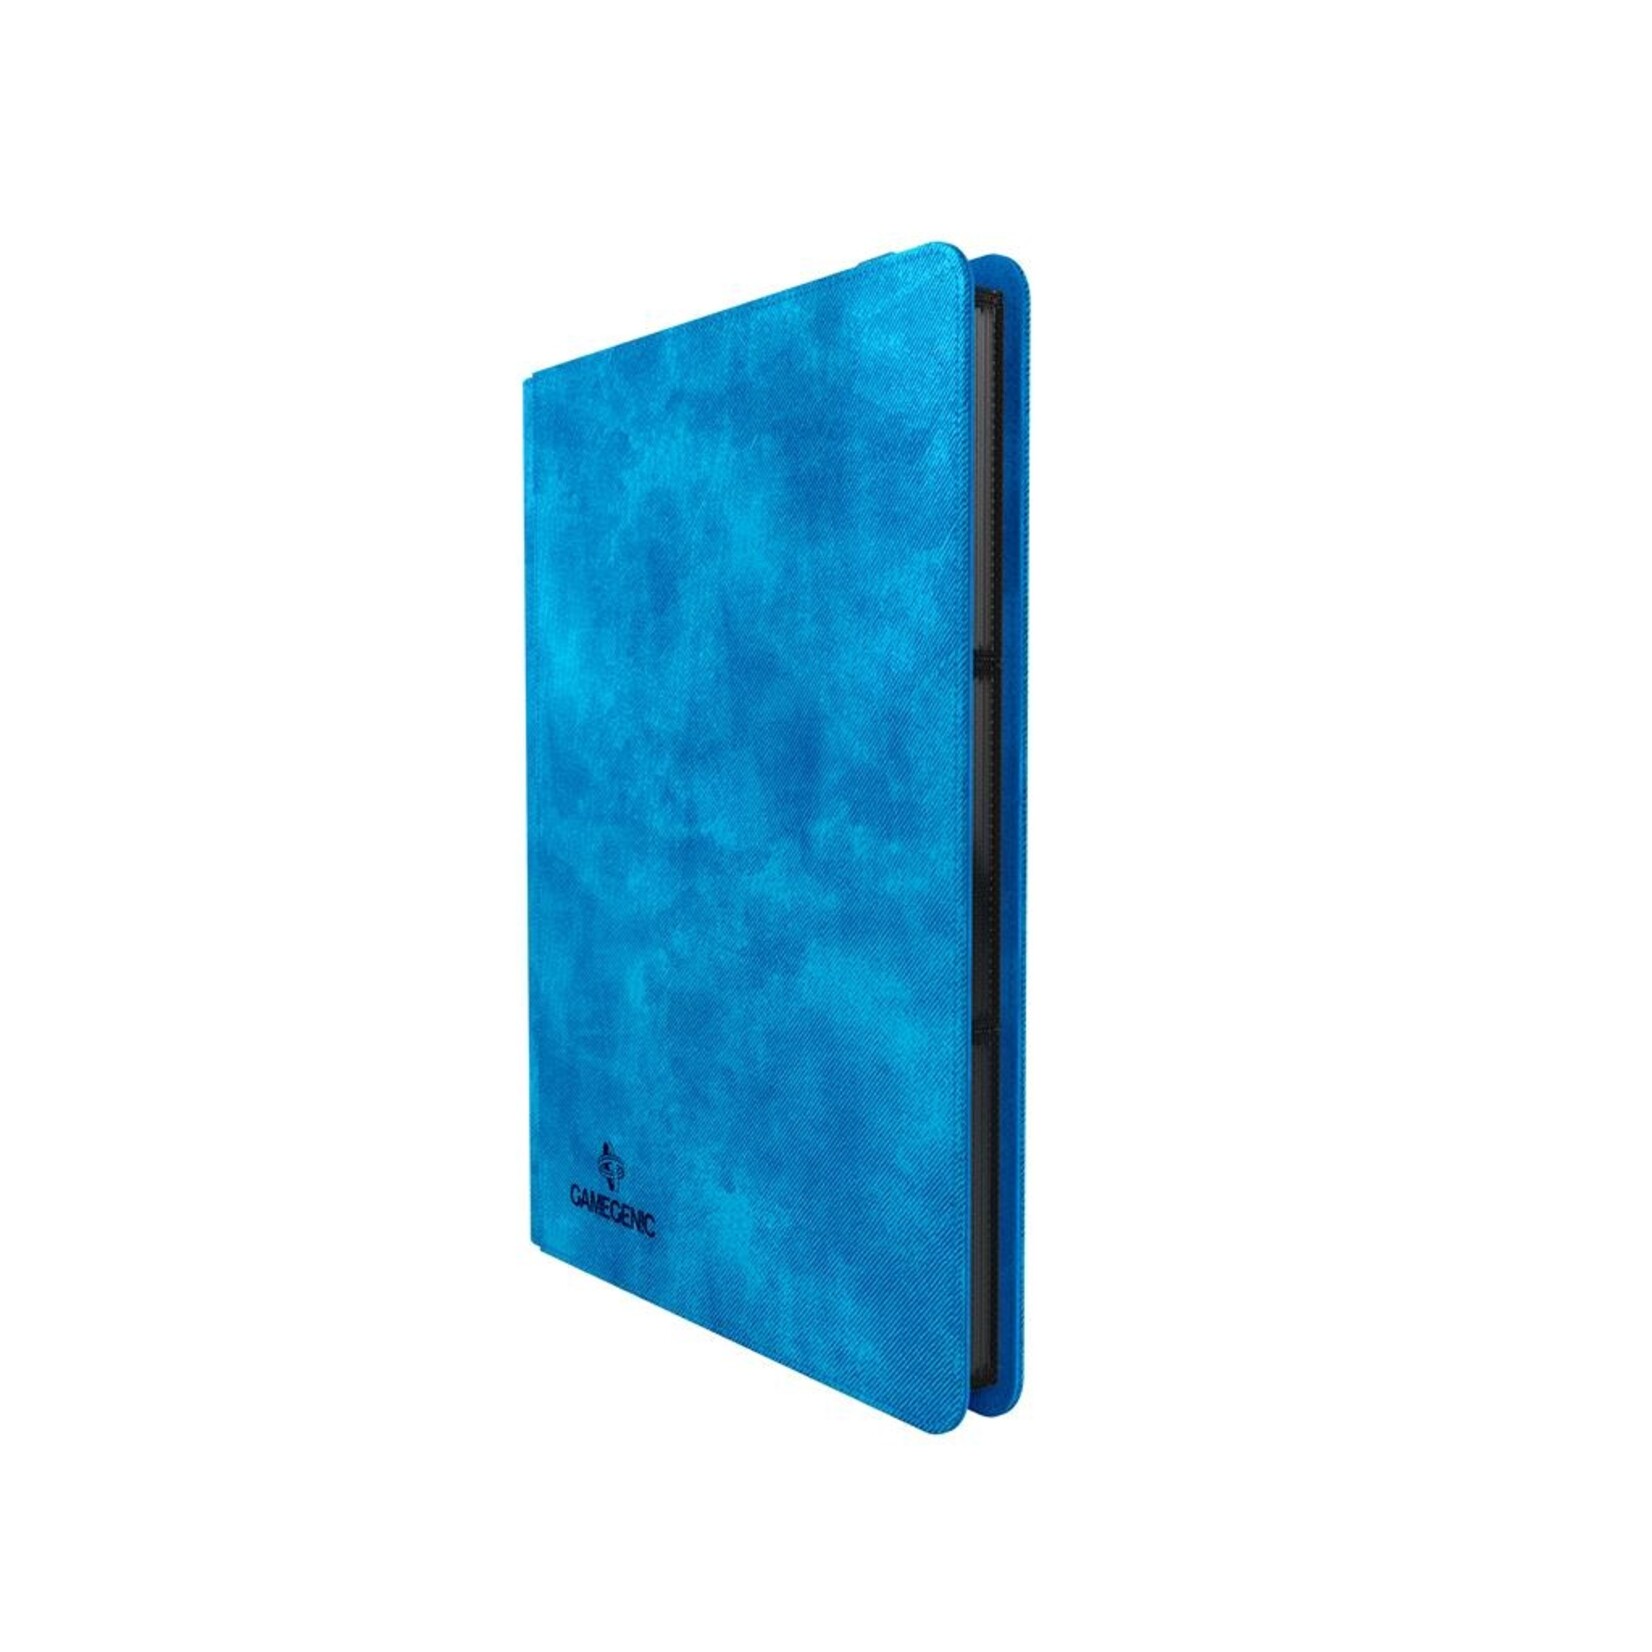 Gamegenic Gamegenic Portfolio Prime Album 18-Pocket Blue